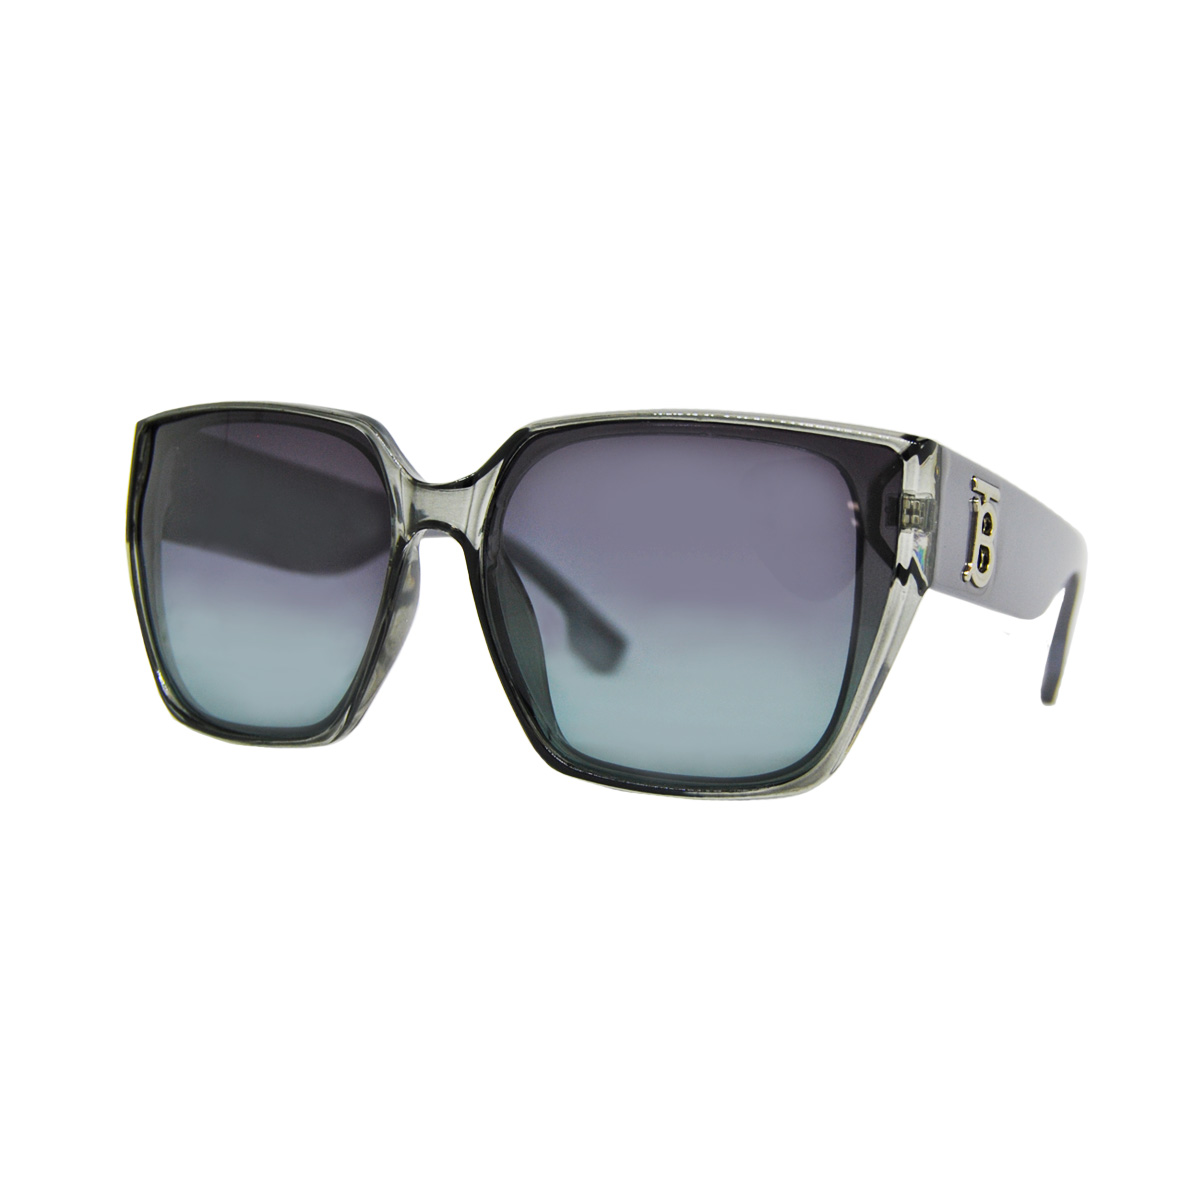 Солнцезащитные очки Maiersha модель 03544 C42-41